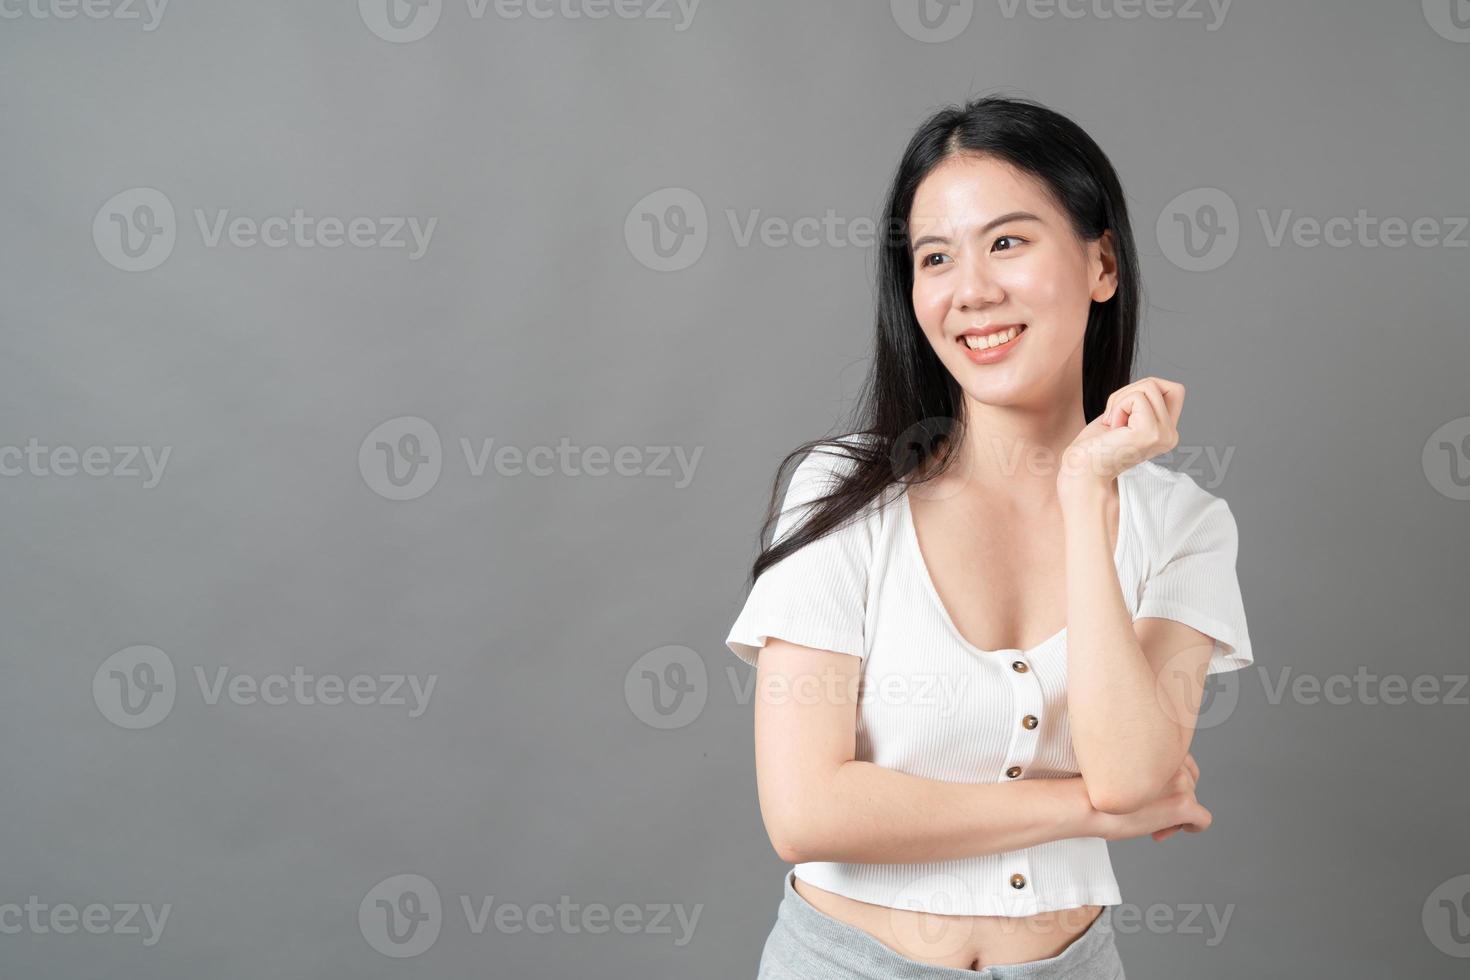 Joven mujer asiática con rostro feliz y sonriente en camisa blanca sobre fondo gris foto